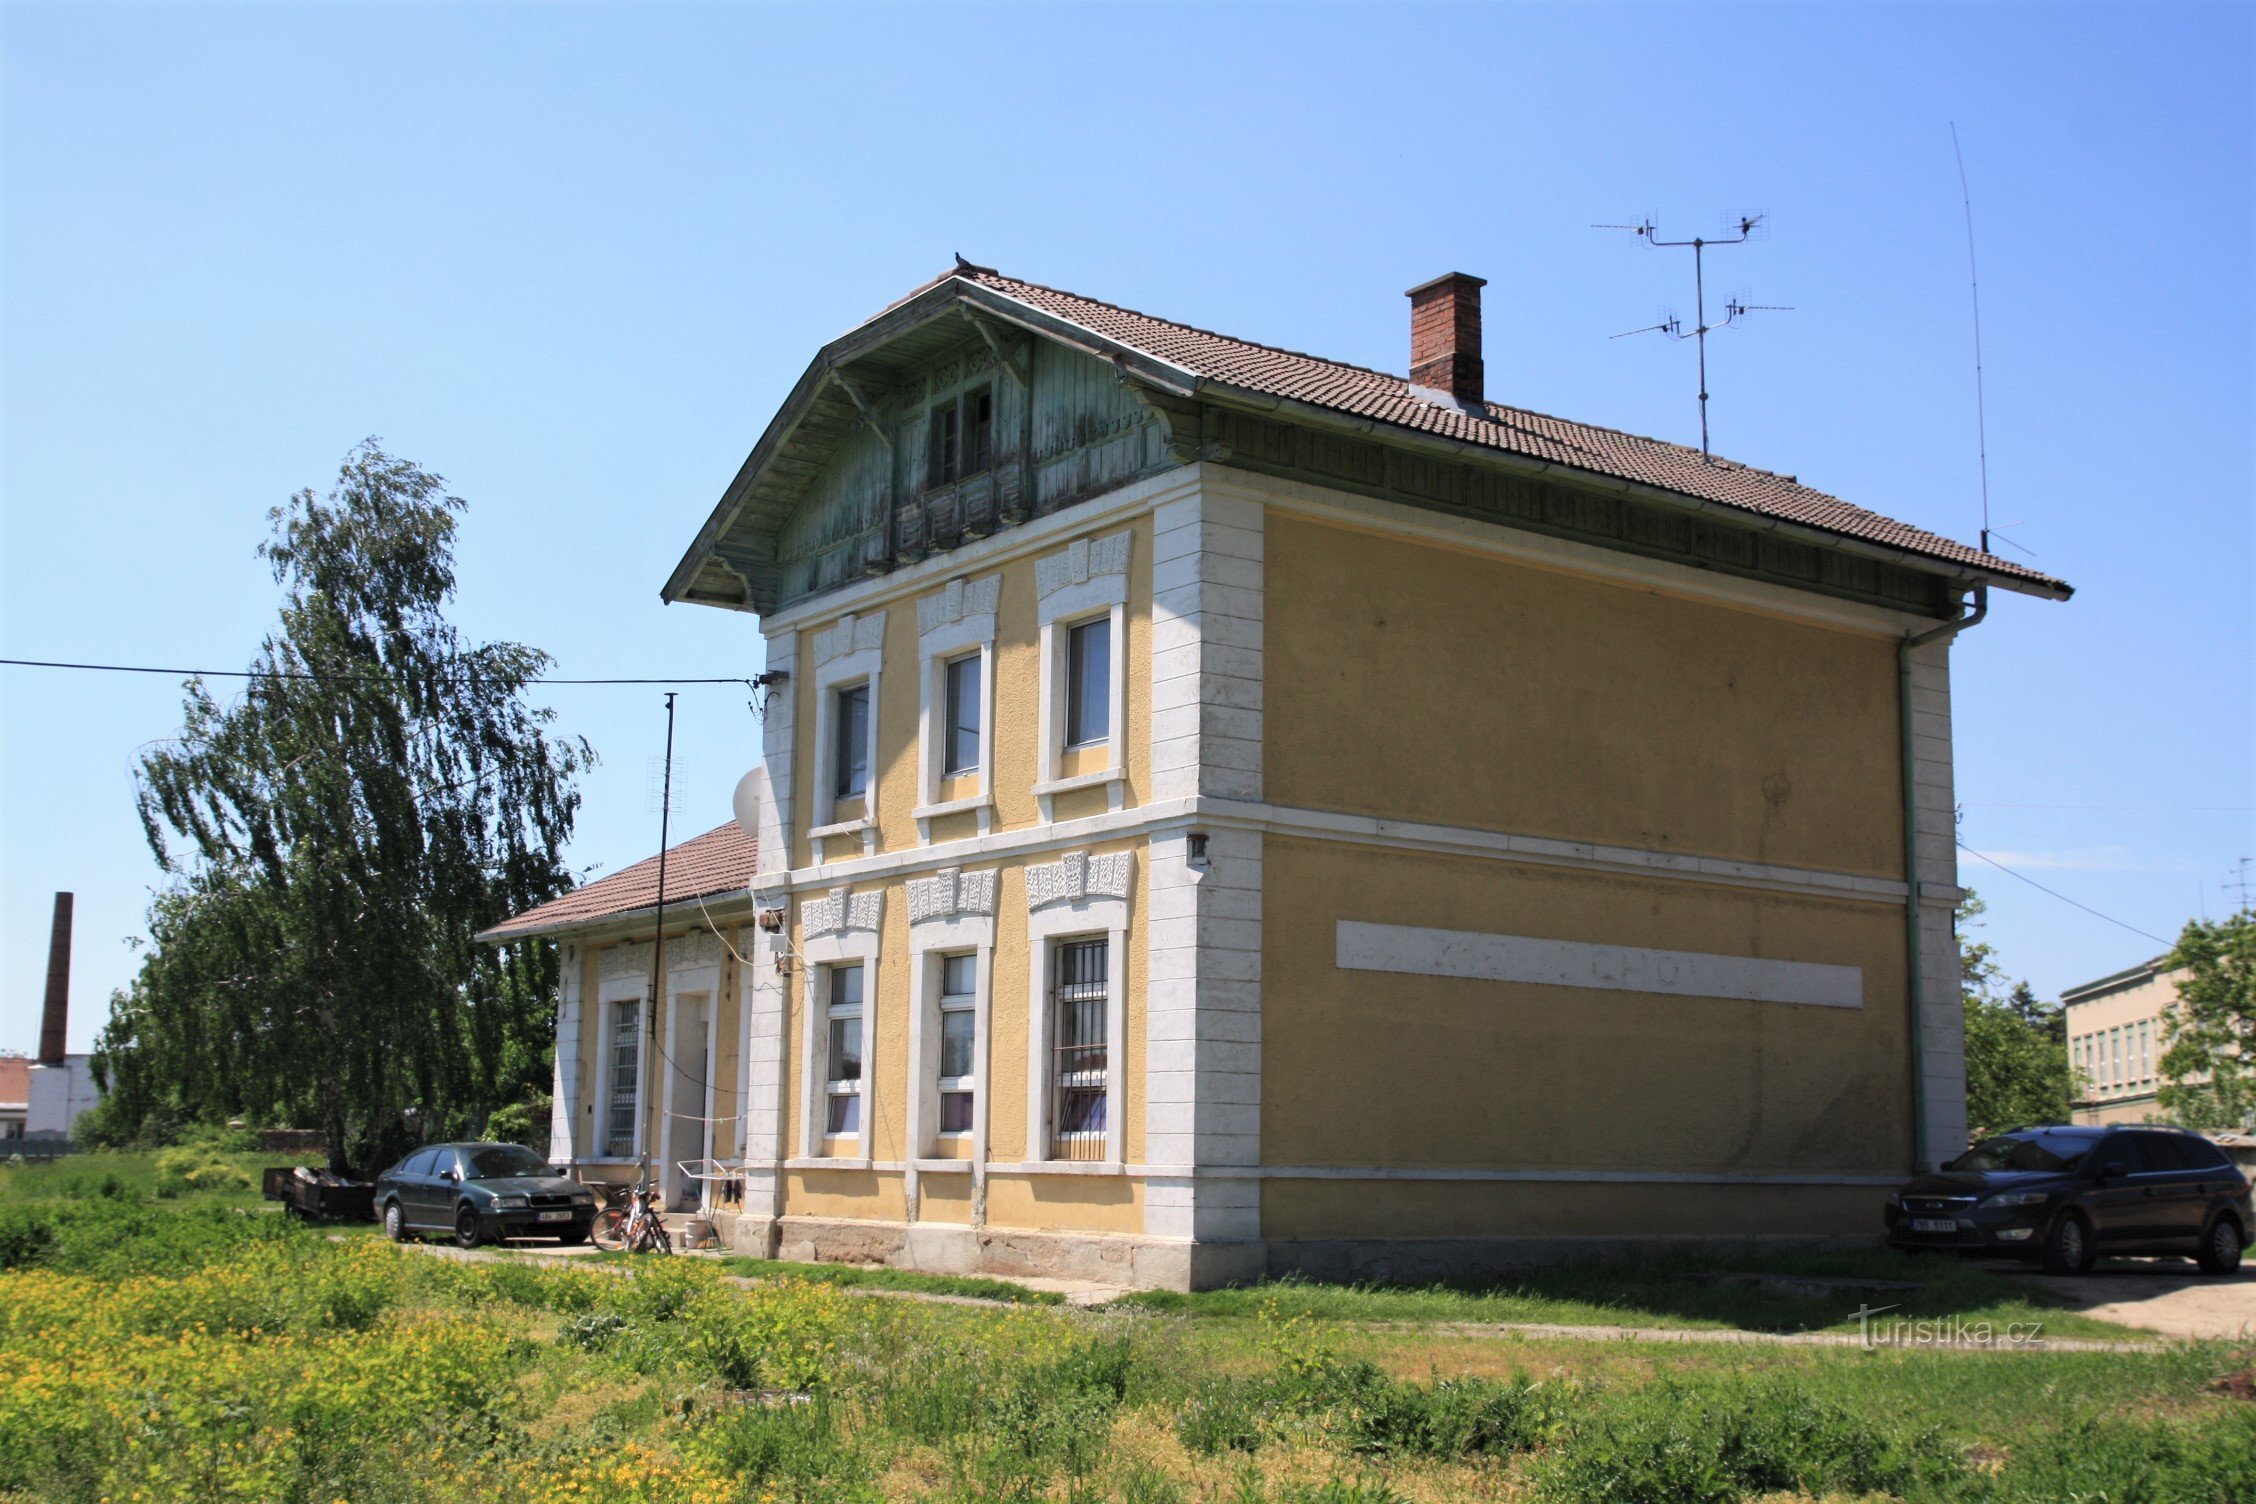 Ancien bâtiment de la gare